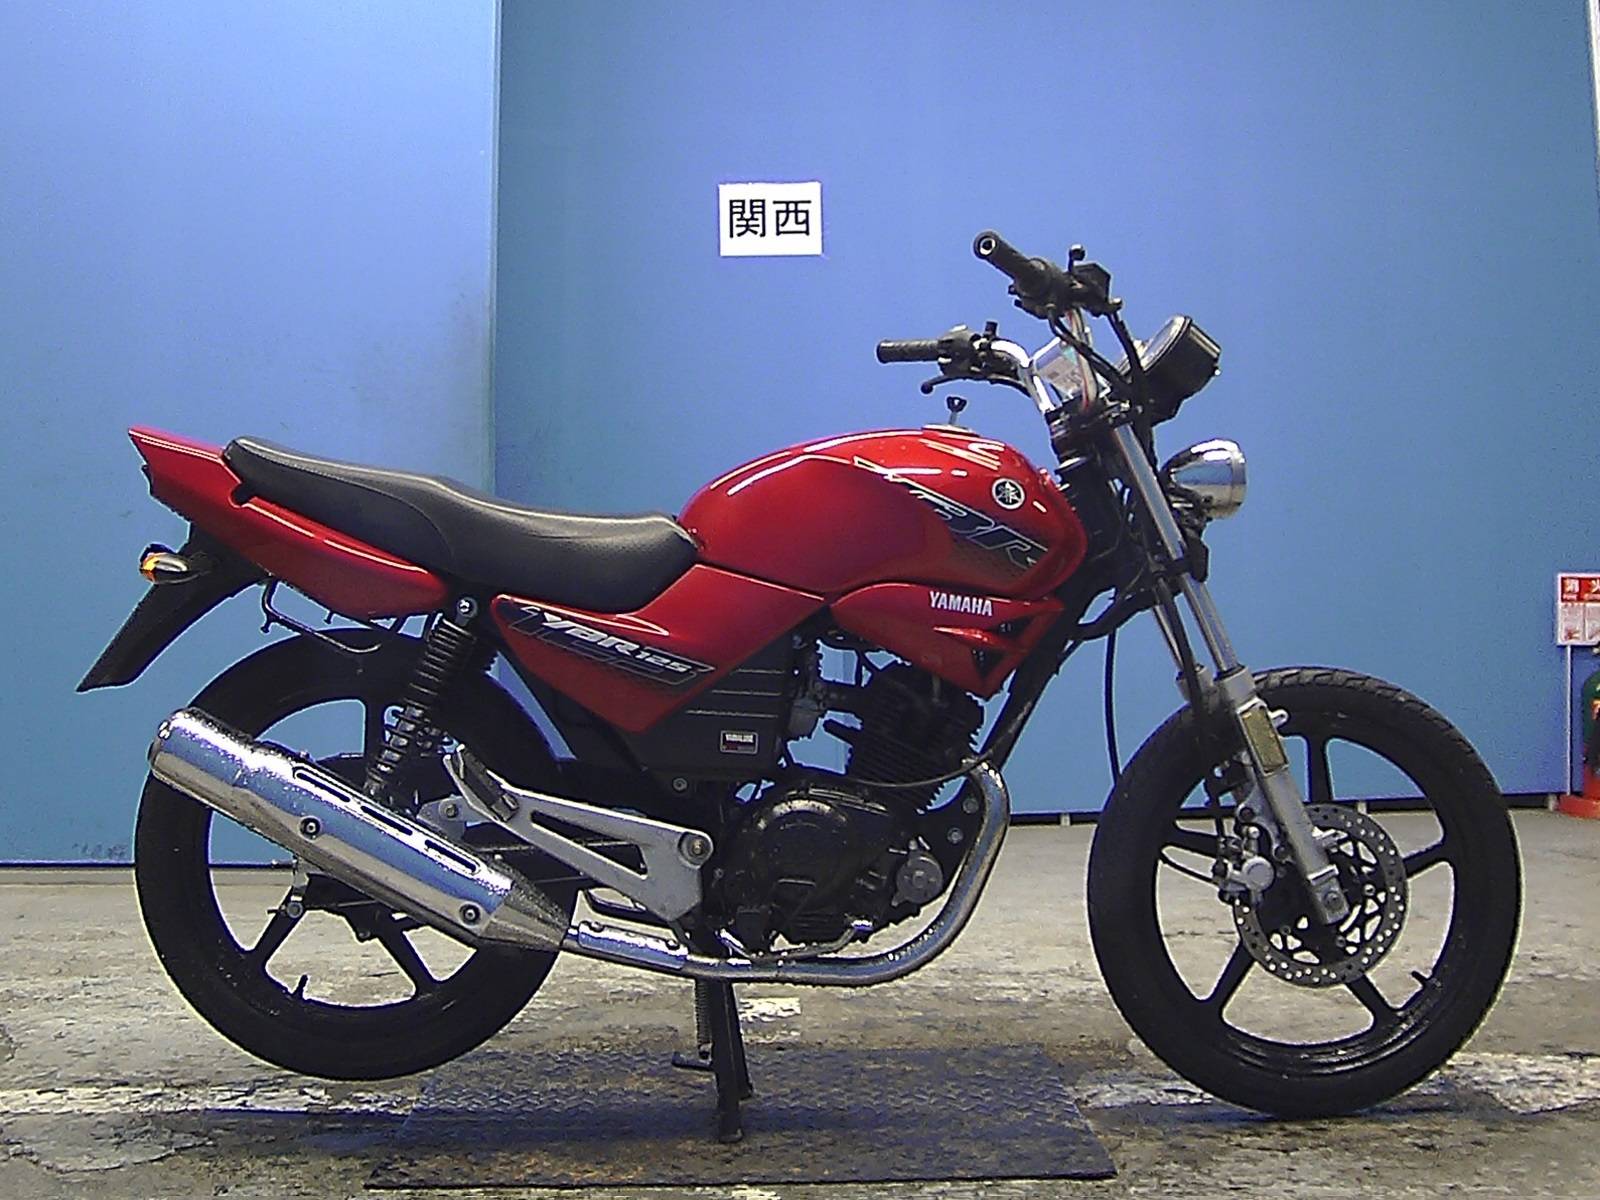 Мотоцикл yamaha ybr 125: технические и внешние характеристики, плюсы и минусы